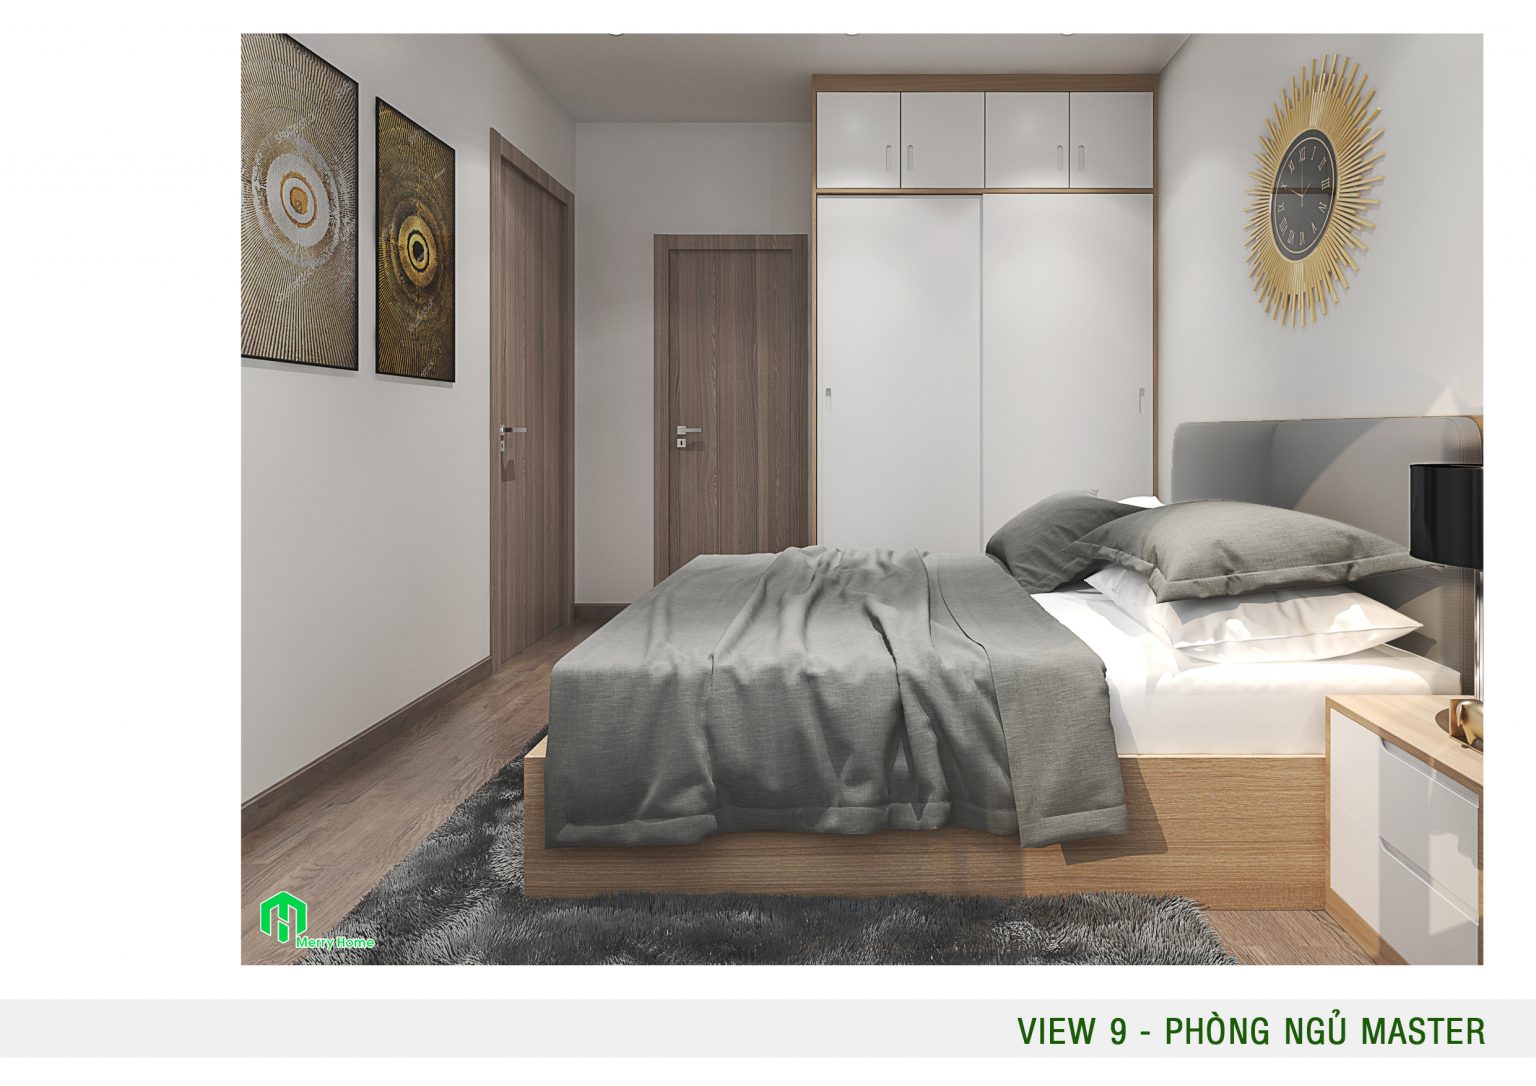 HIỆN - Thiết kế nội thất chung cư mini hiện đại, thông minh Mau-thiet-ke-noi-that-chung-cu-mini-30m2-3-1536x1086